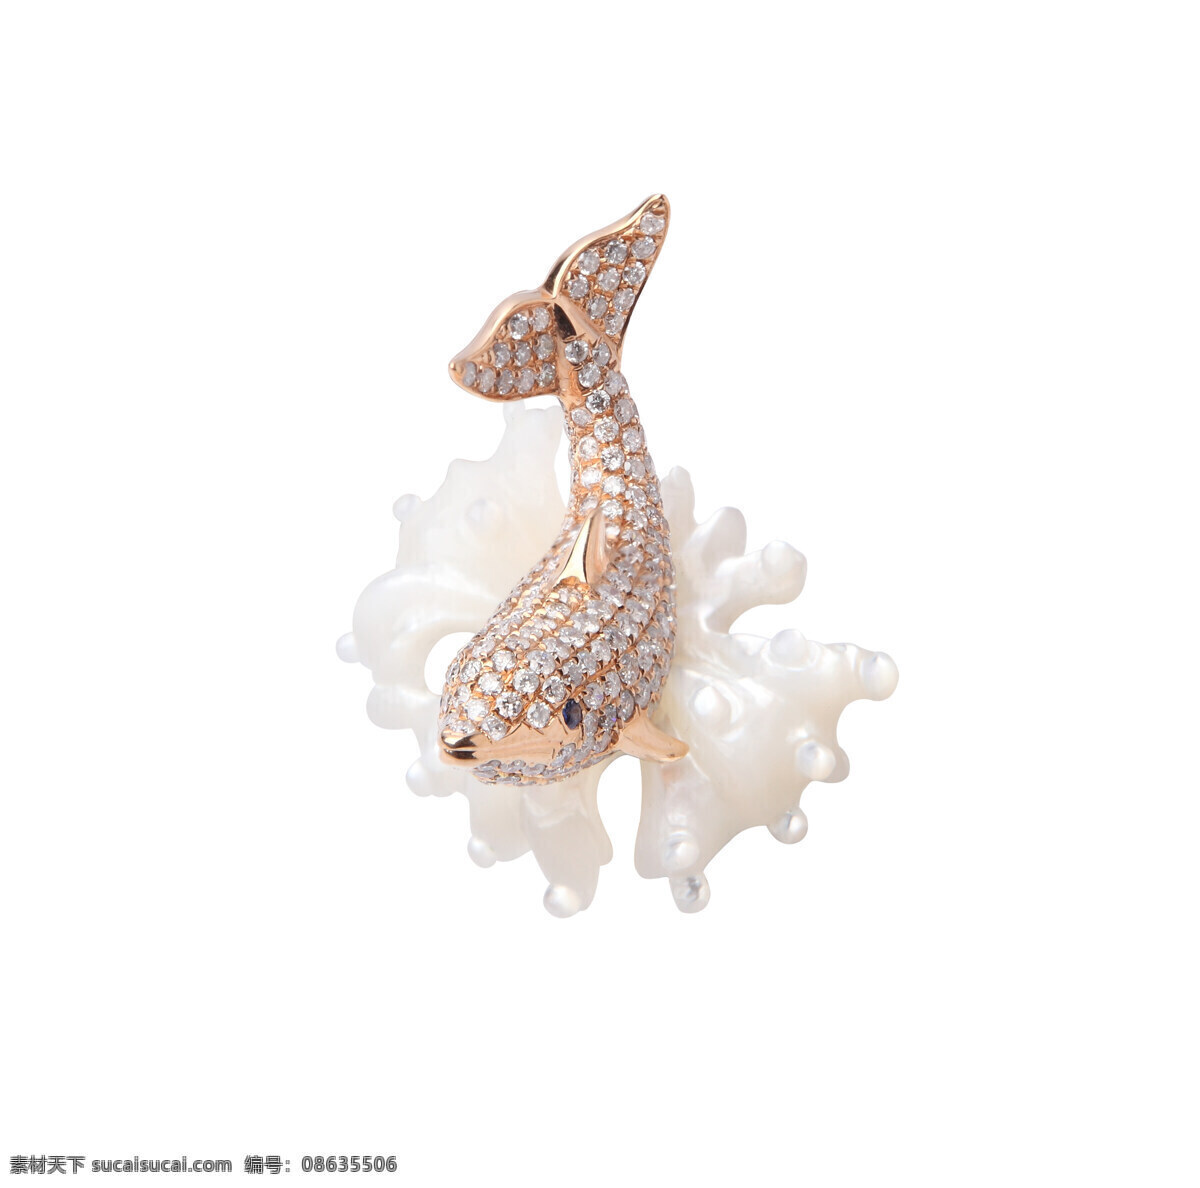 动物 珊瑚 生活百科 生活素材 珠宝 钻石 鲸鱼 珊瑚鲸鱼 24k 珠宝类摄影 psd源文件